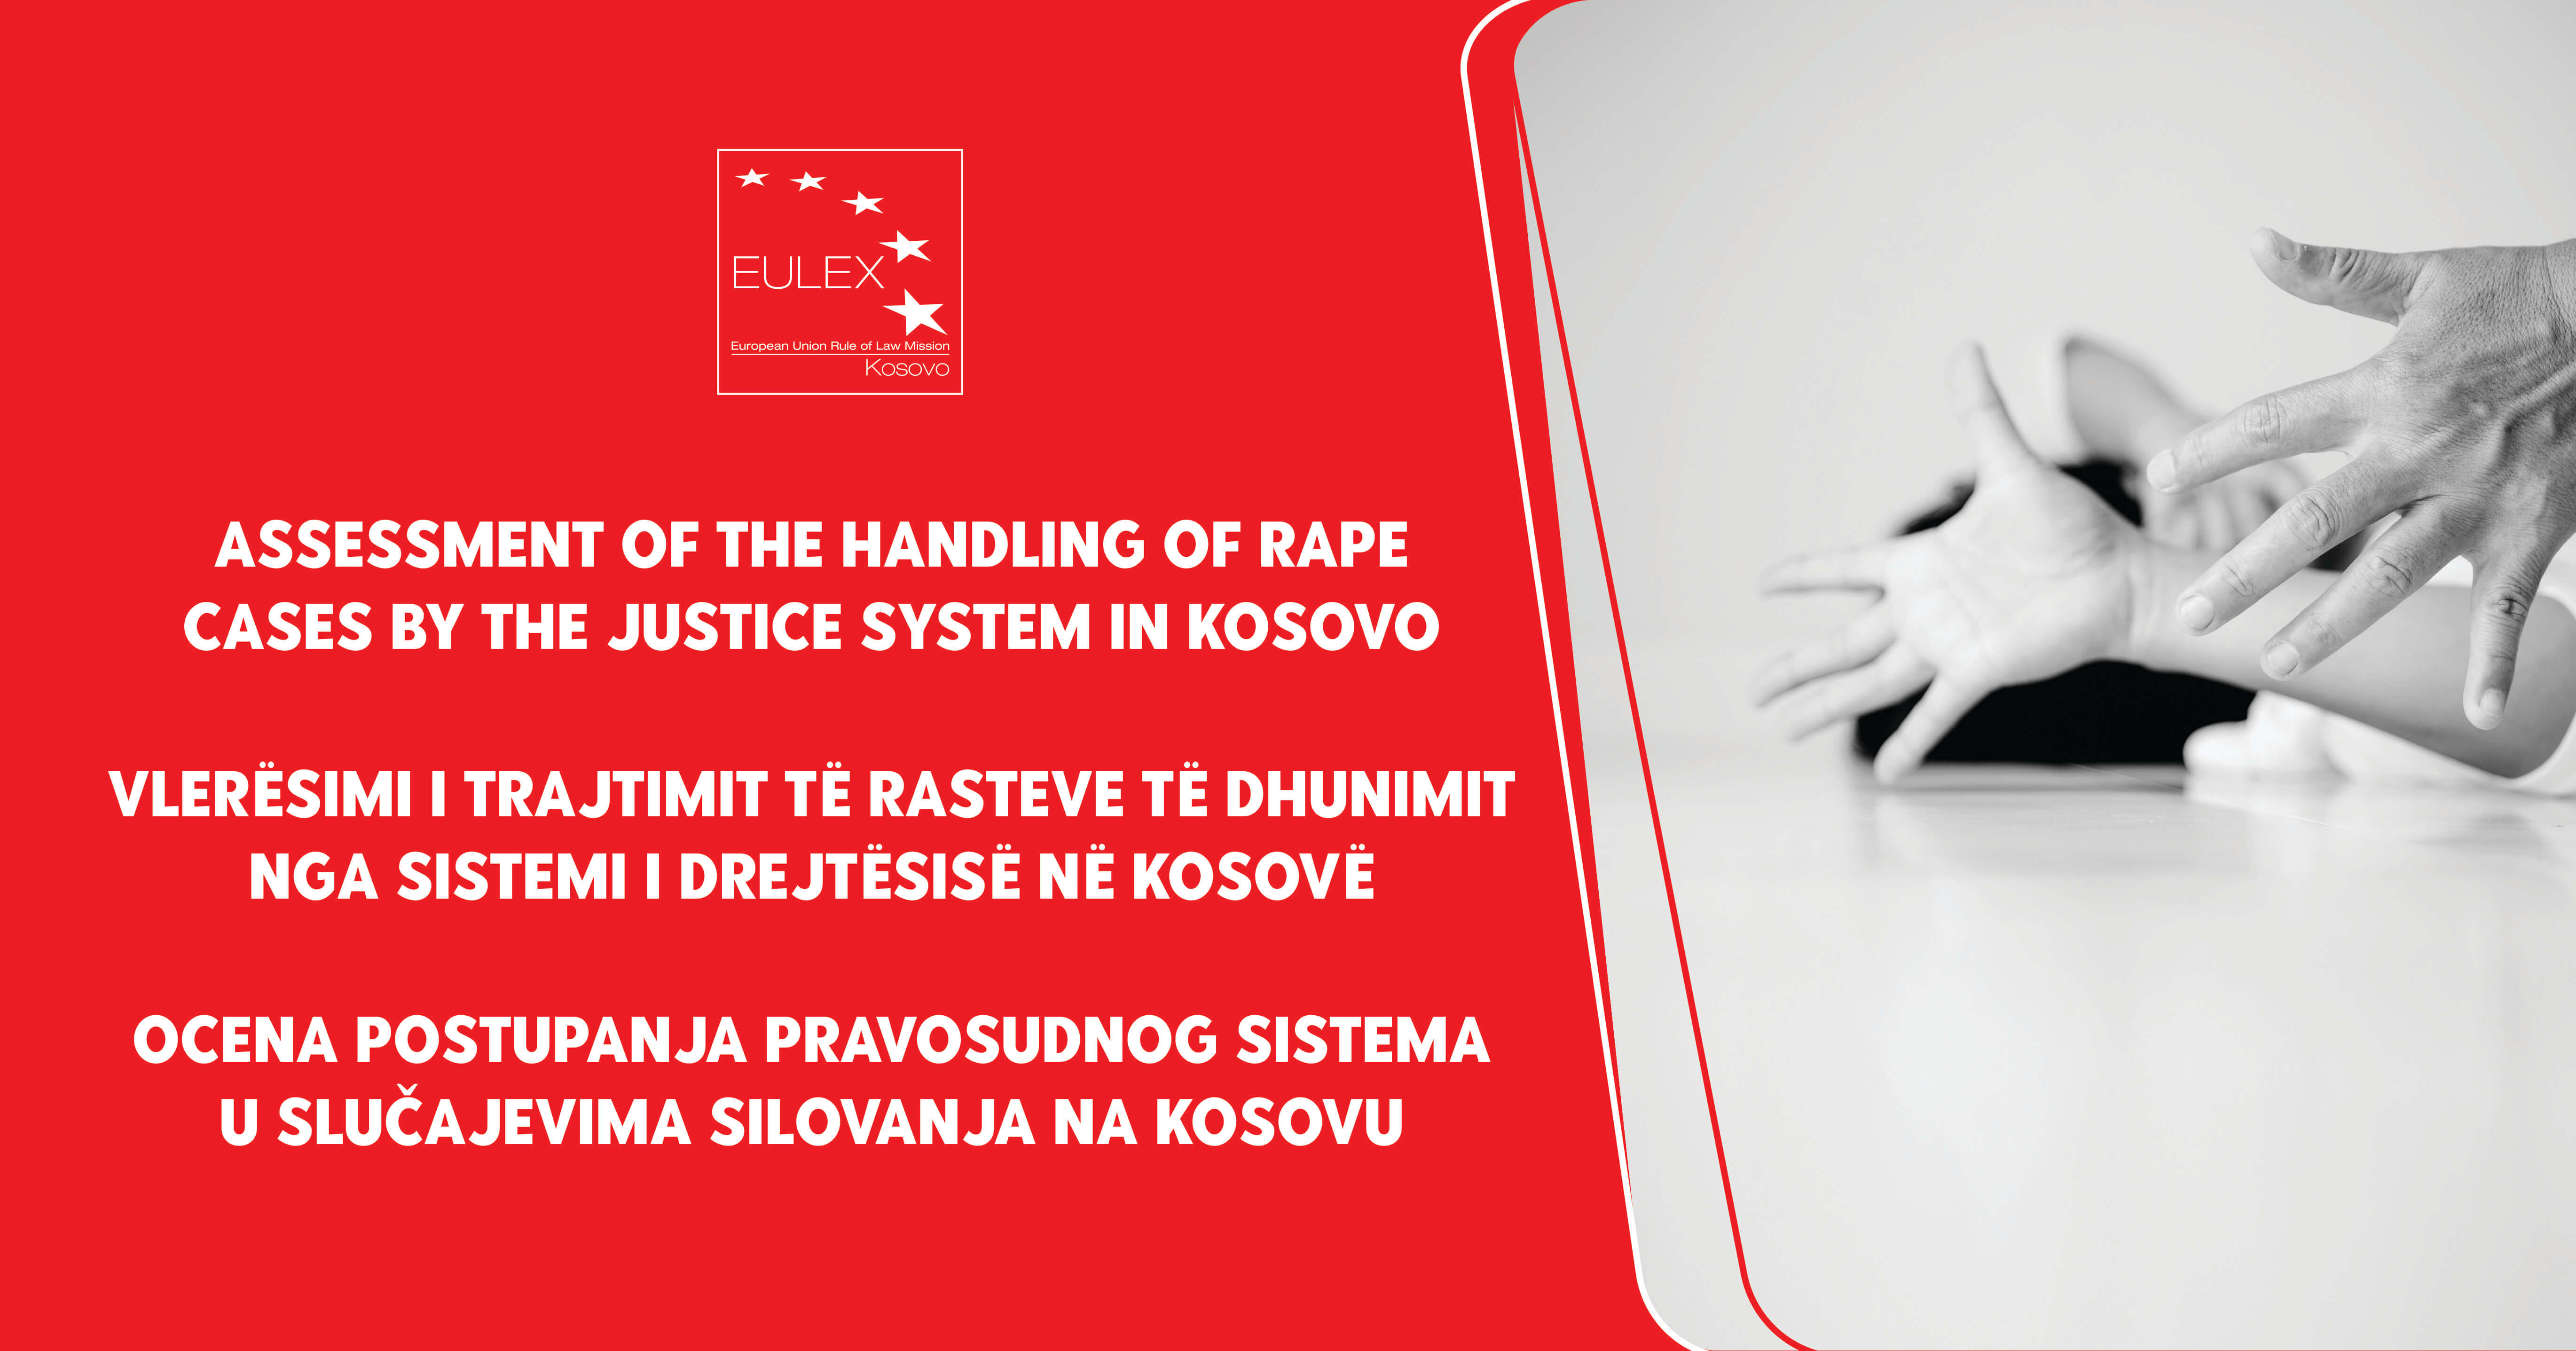 Prezentacija EULEX-ovog Izveštaja o praćenju: “Ocena postupanja pravosudnog sistema u slučajevima silovanja na Kosovu”